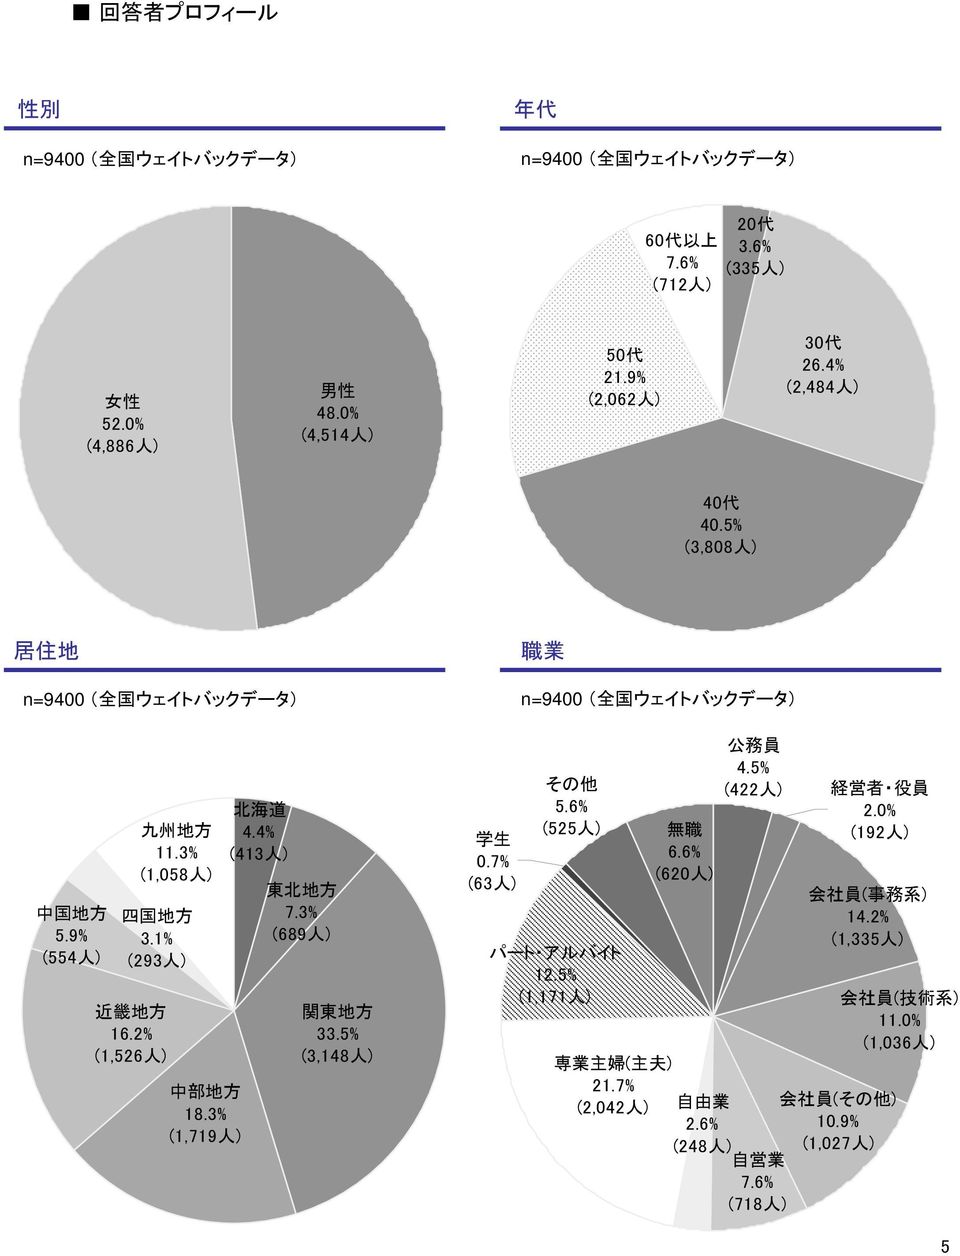 2% (1,526 人 ) 中 部 地 方 18.3% (1,719 人 ) 北 海 道 4.4% (413 人 ) 東 北 地 方 7.3% (689 人 ) 関 東 地 方 33.5% (3,148 人 ) 学 生 0.7% (63 人 ) その 他 5.6% (525 人 ) パート アルバイト 12.5% (1,171 人 ) 無 職 6.